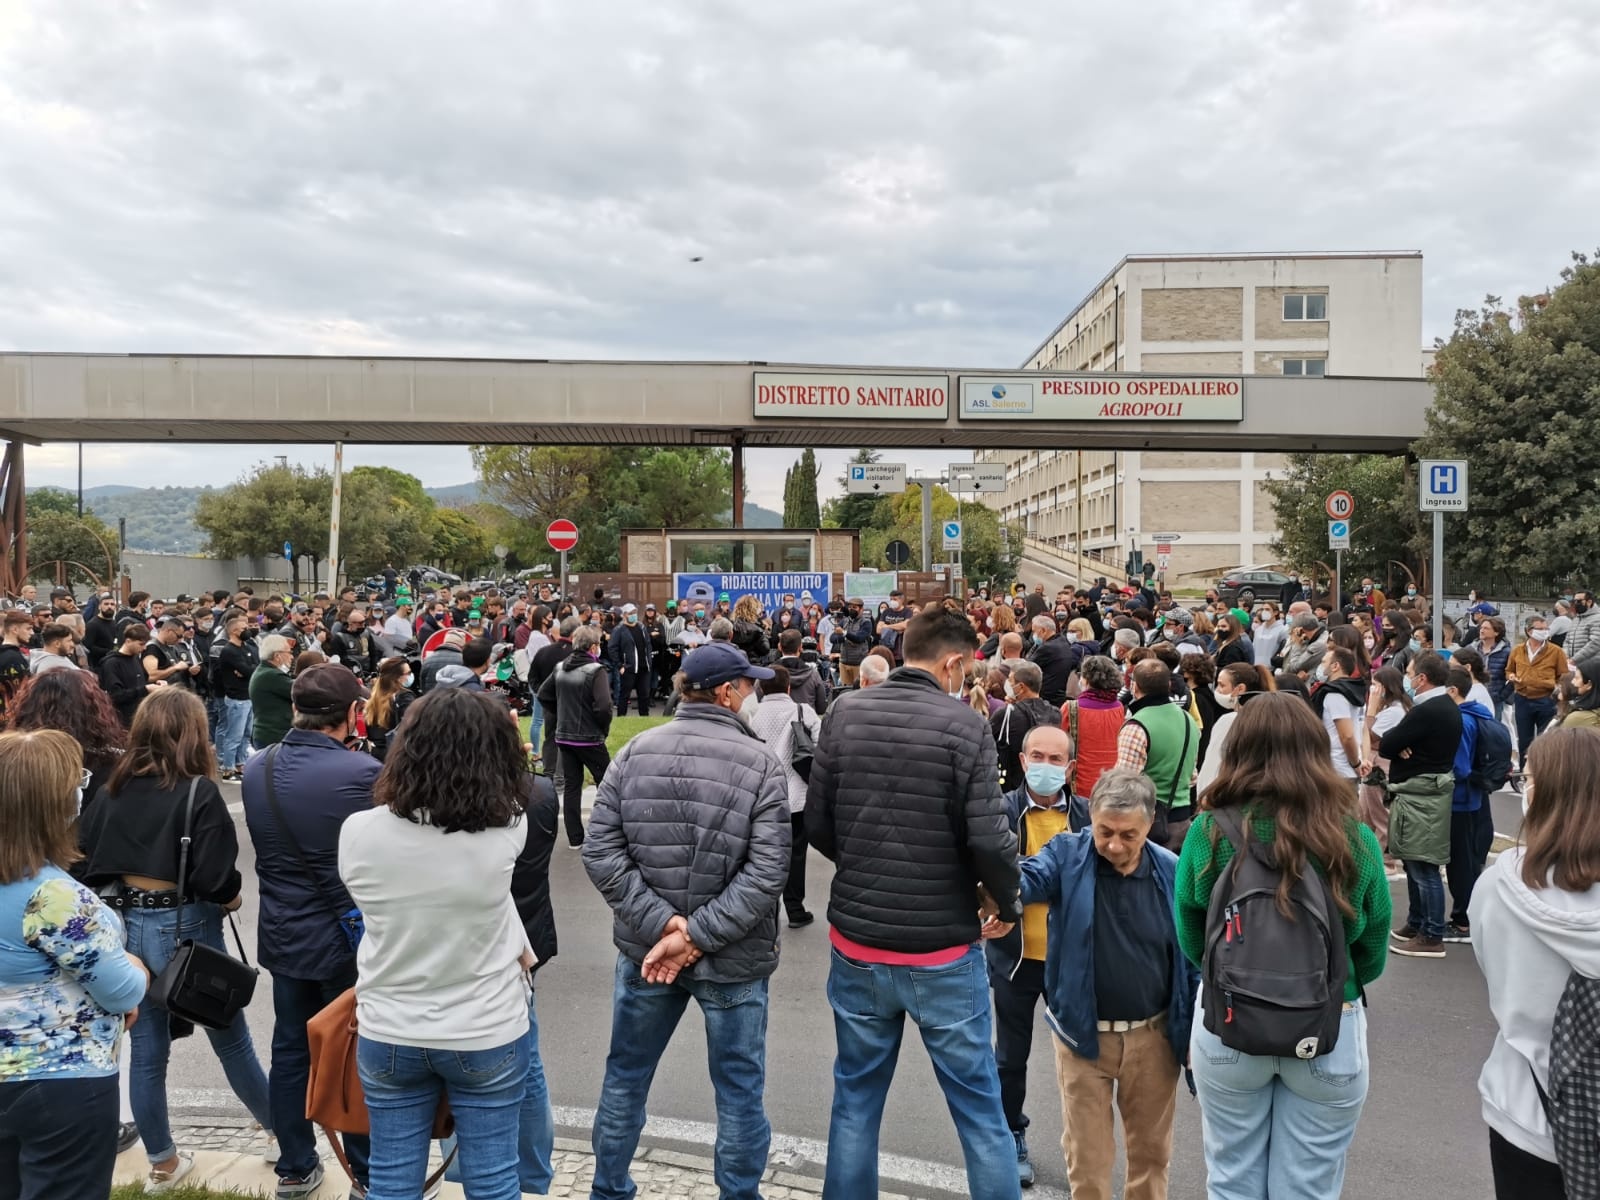 Ospedale di Agropoli, in centinaia per chiedere la riapertura: ultimatum alla Regione